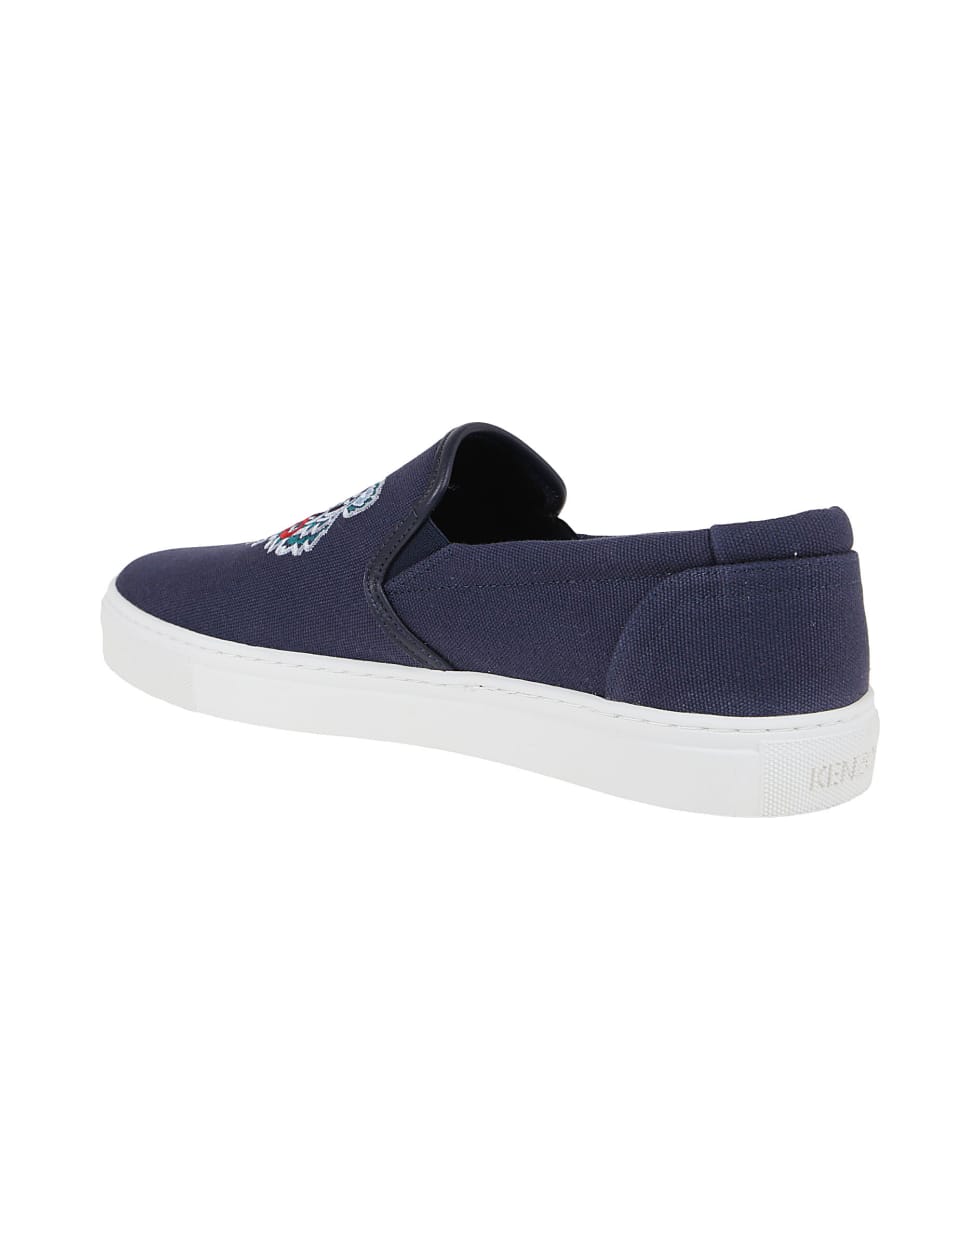 Kenzo Sneakers - Navy Blue